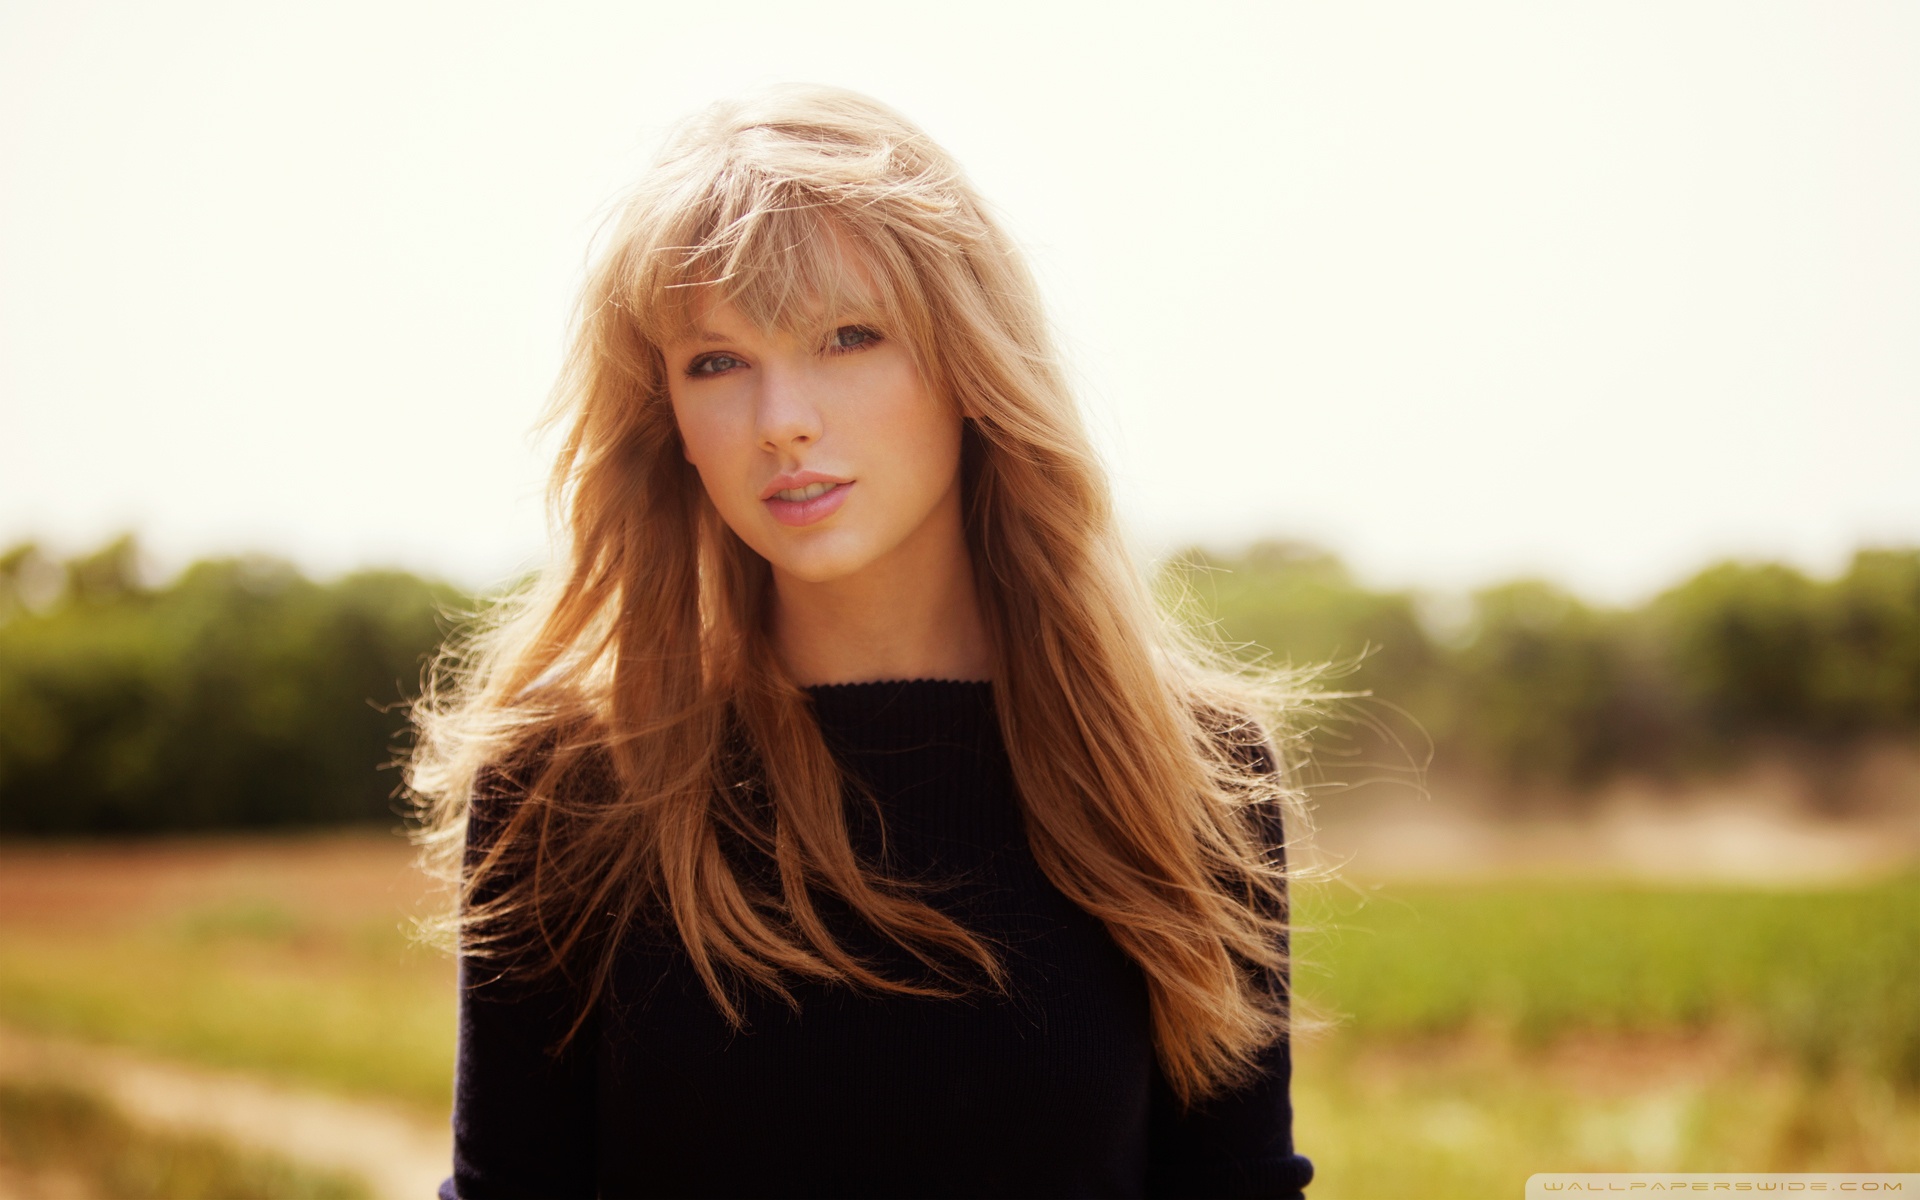 Taylor Swift - Begin Again HD Wide Wallpaper for Widescreen